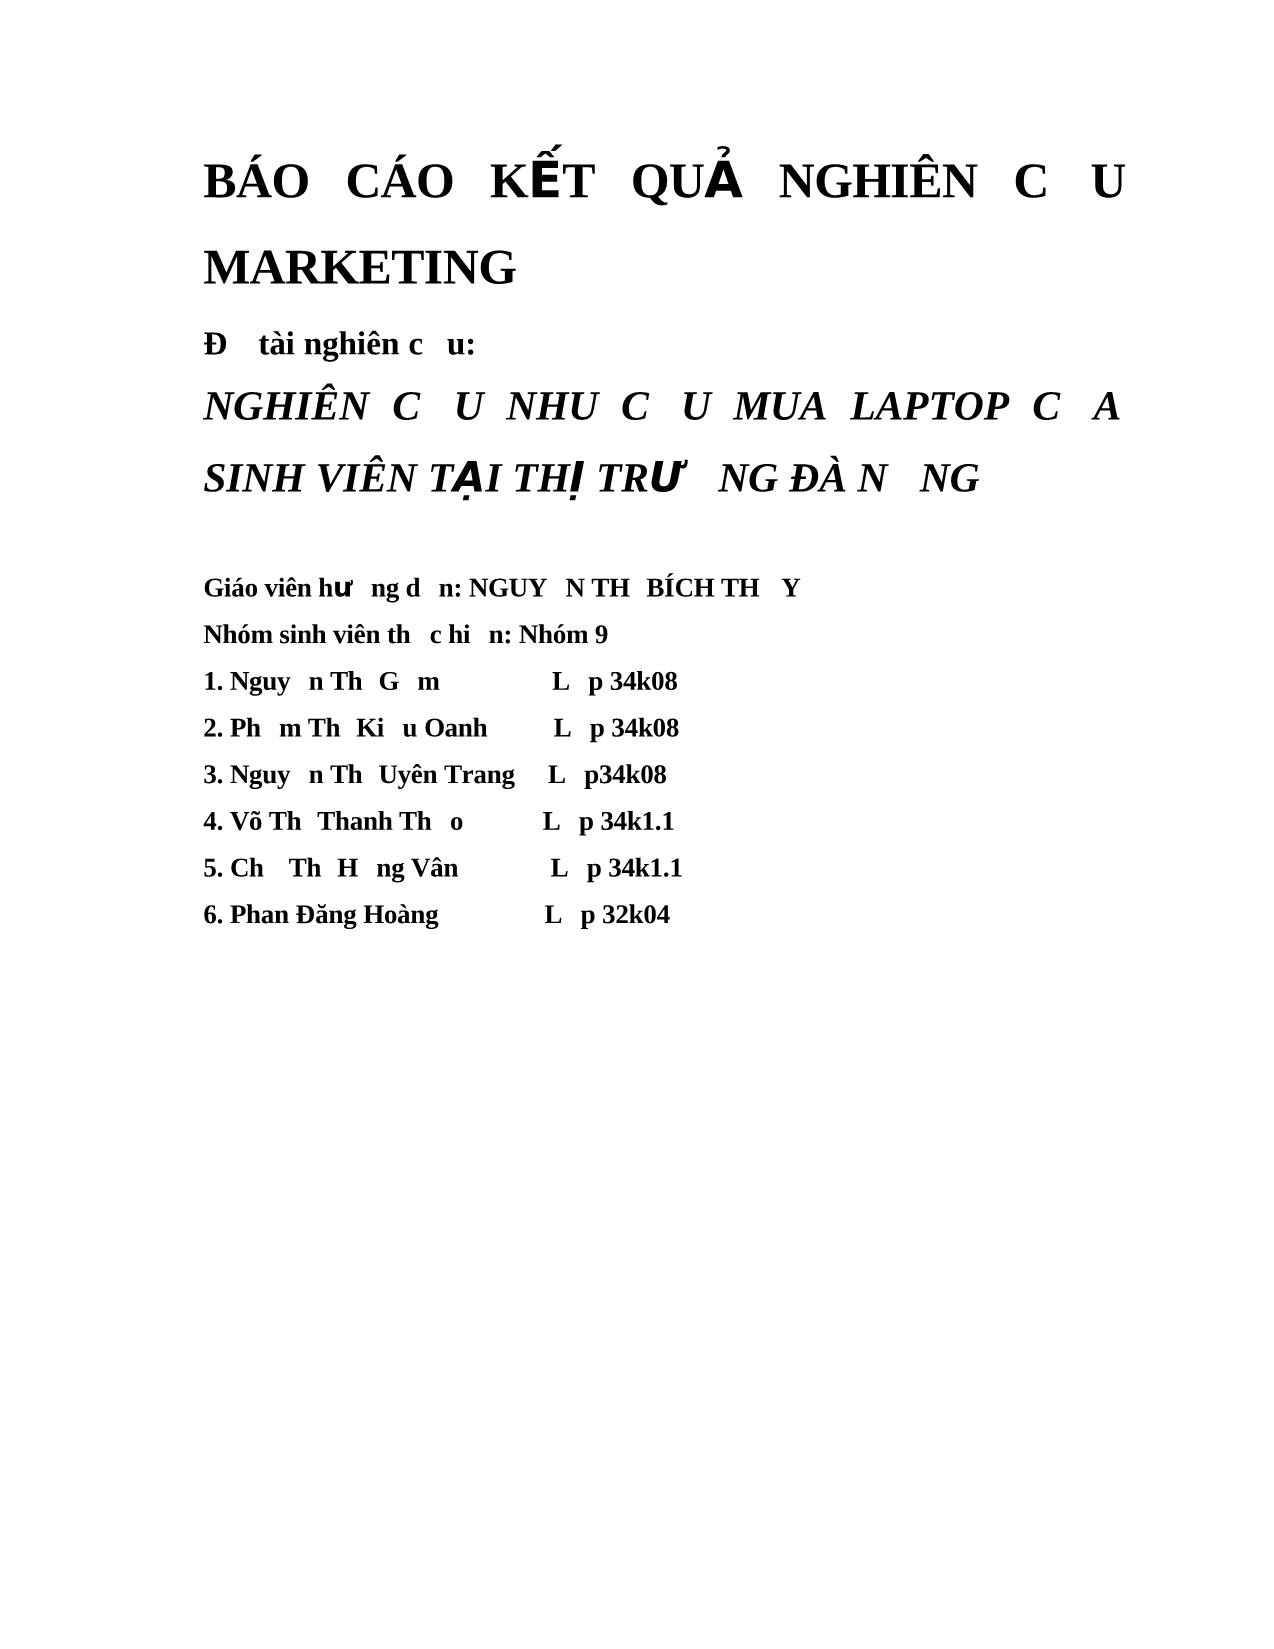 Đề tài Nghiên cứu nhu cầu mua laptop của sinh viên tại thị trường Đà Nẵng trang 1